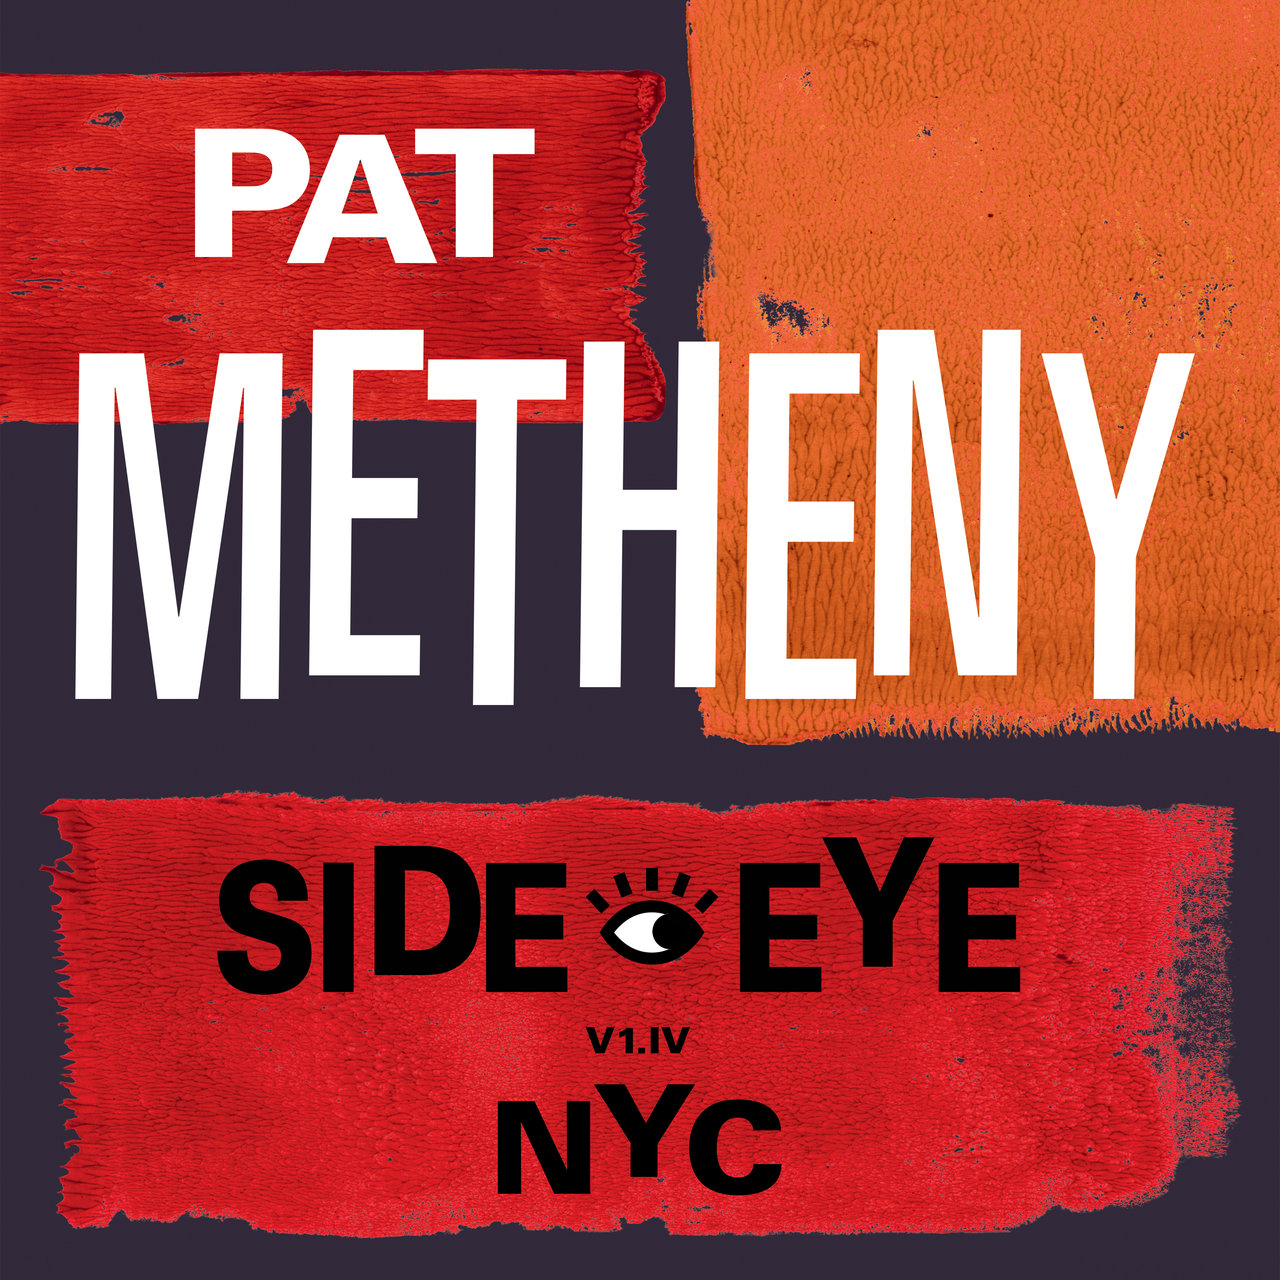 PAT METHENY SIDE EYE NYC V1.IV